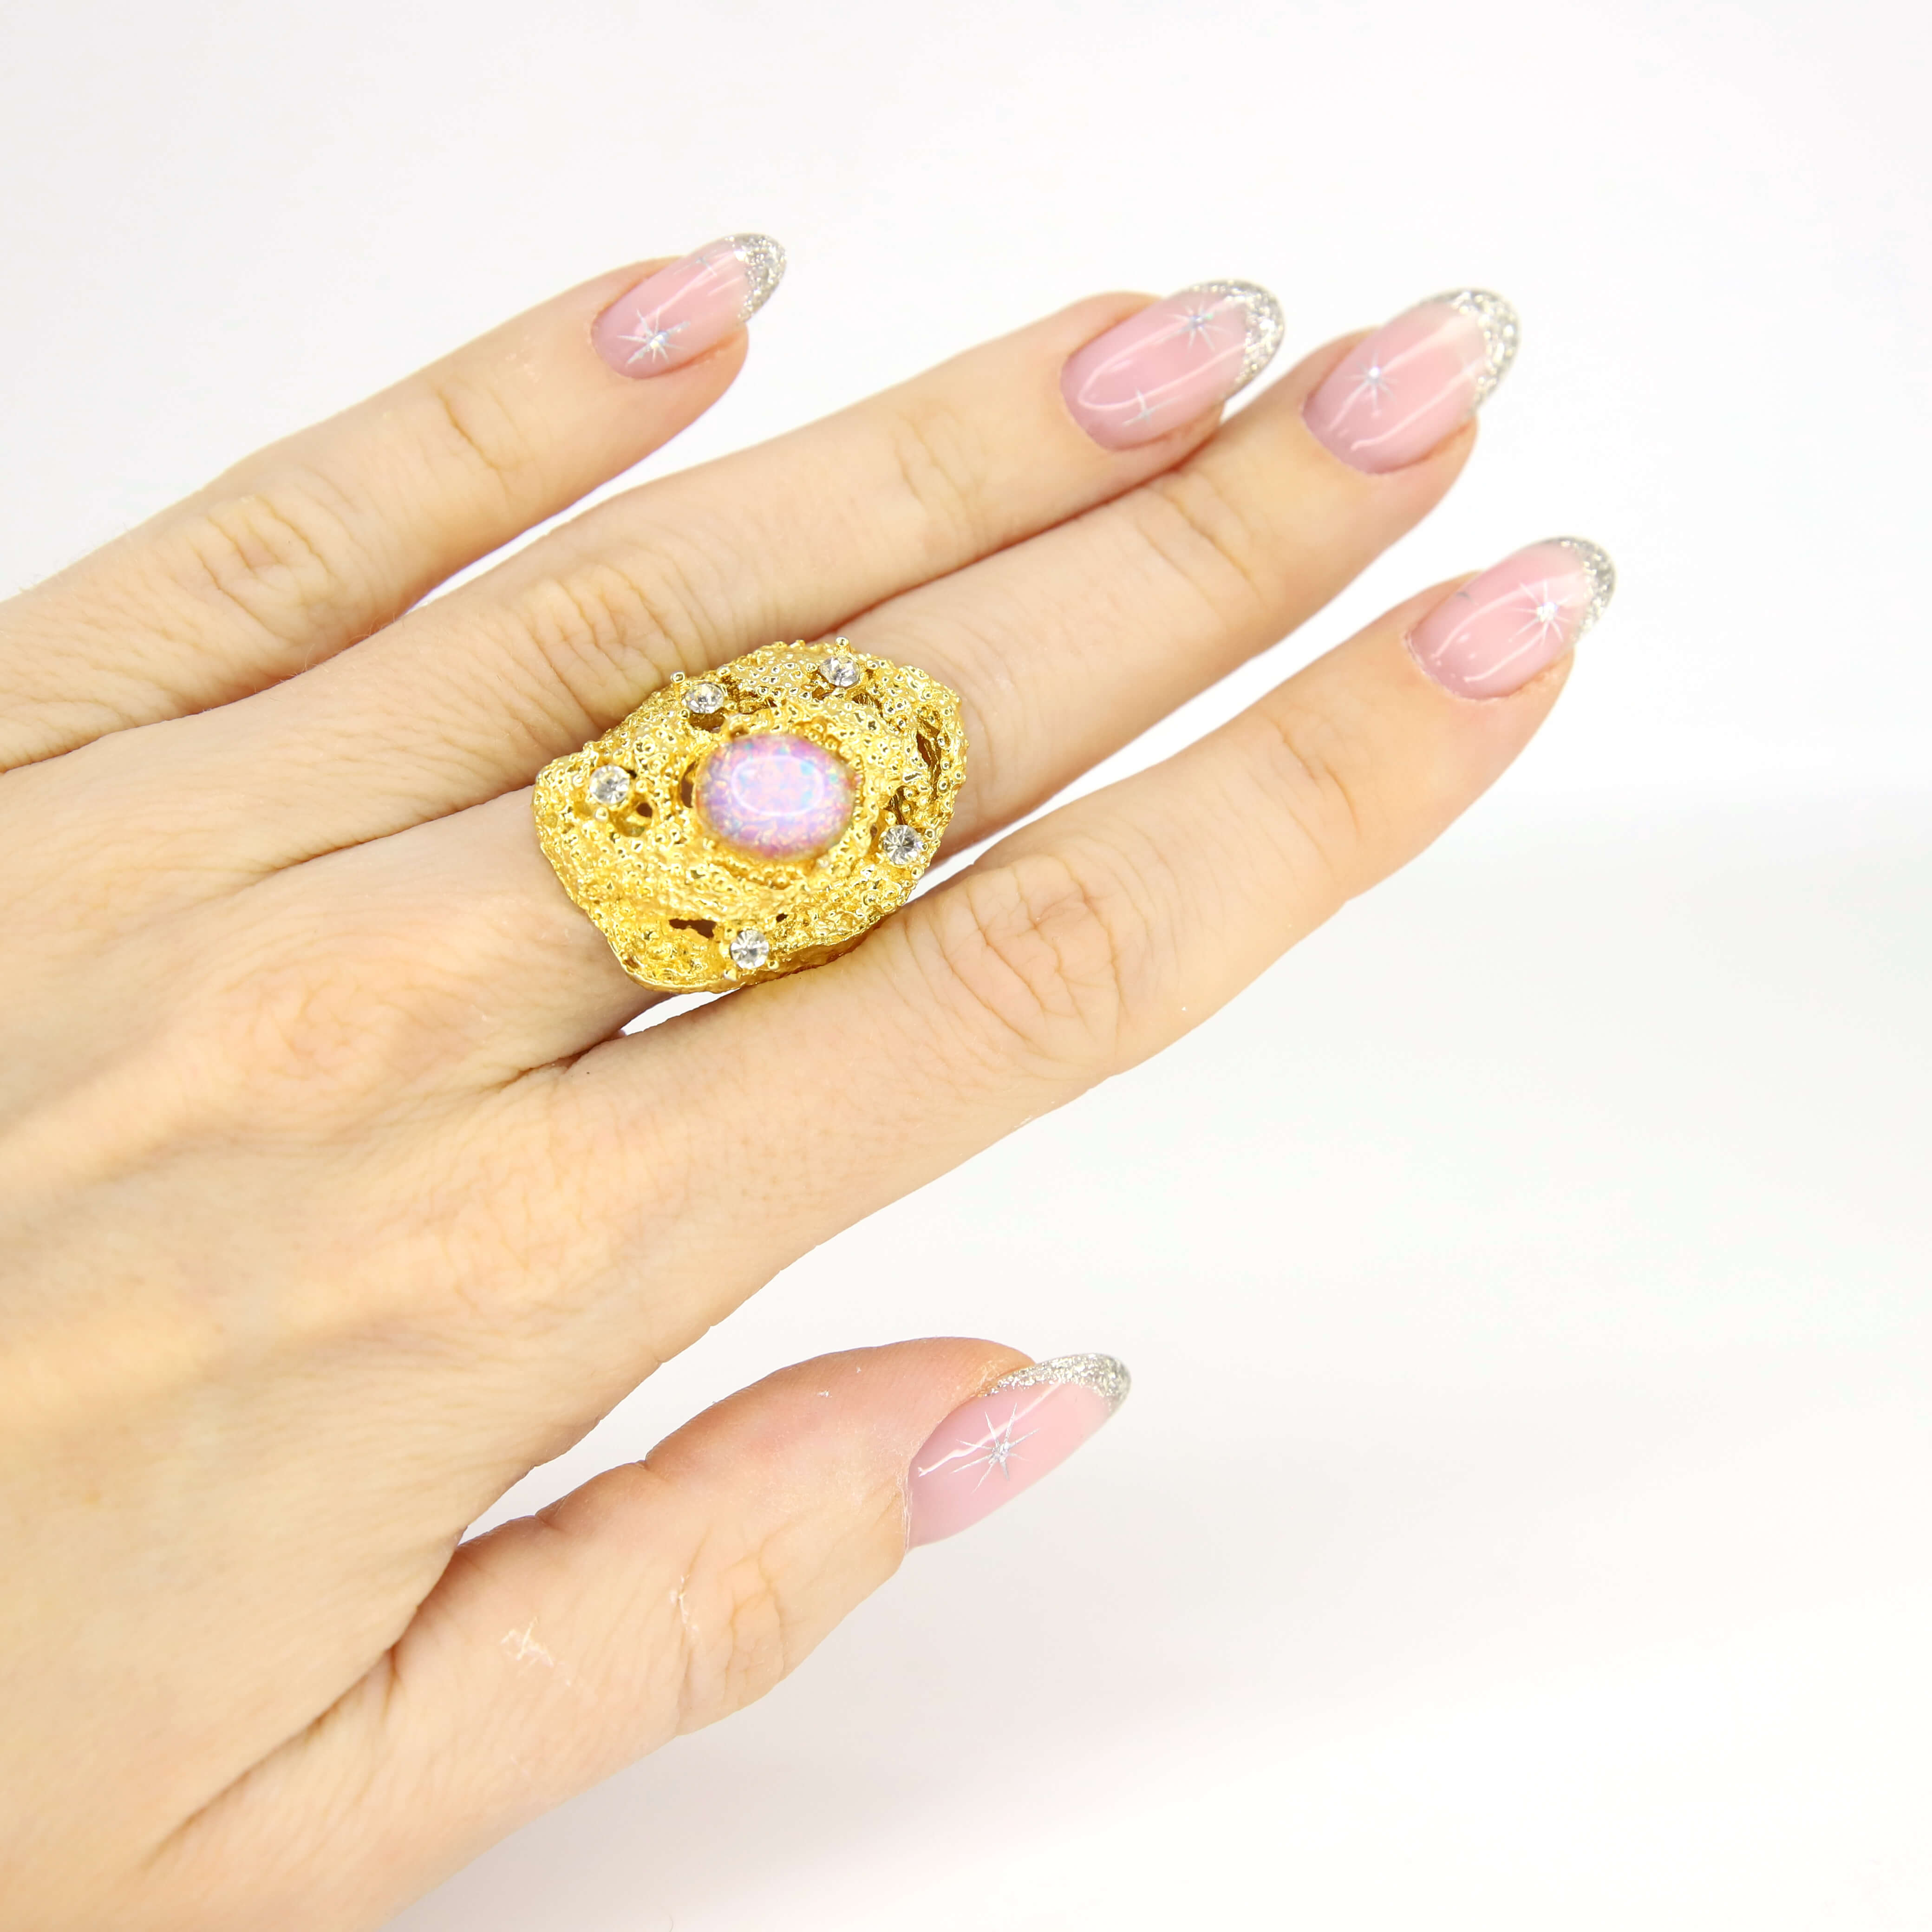 Винтажное кольцо Vogue размер 16,5-17,5, цвет Розовый, фото 1